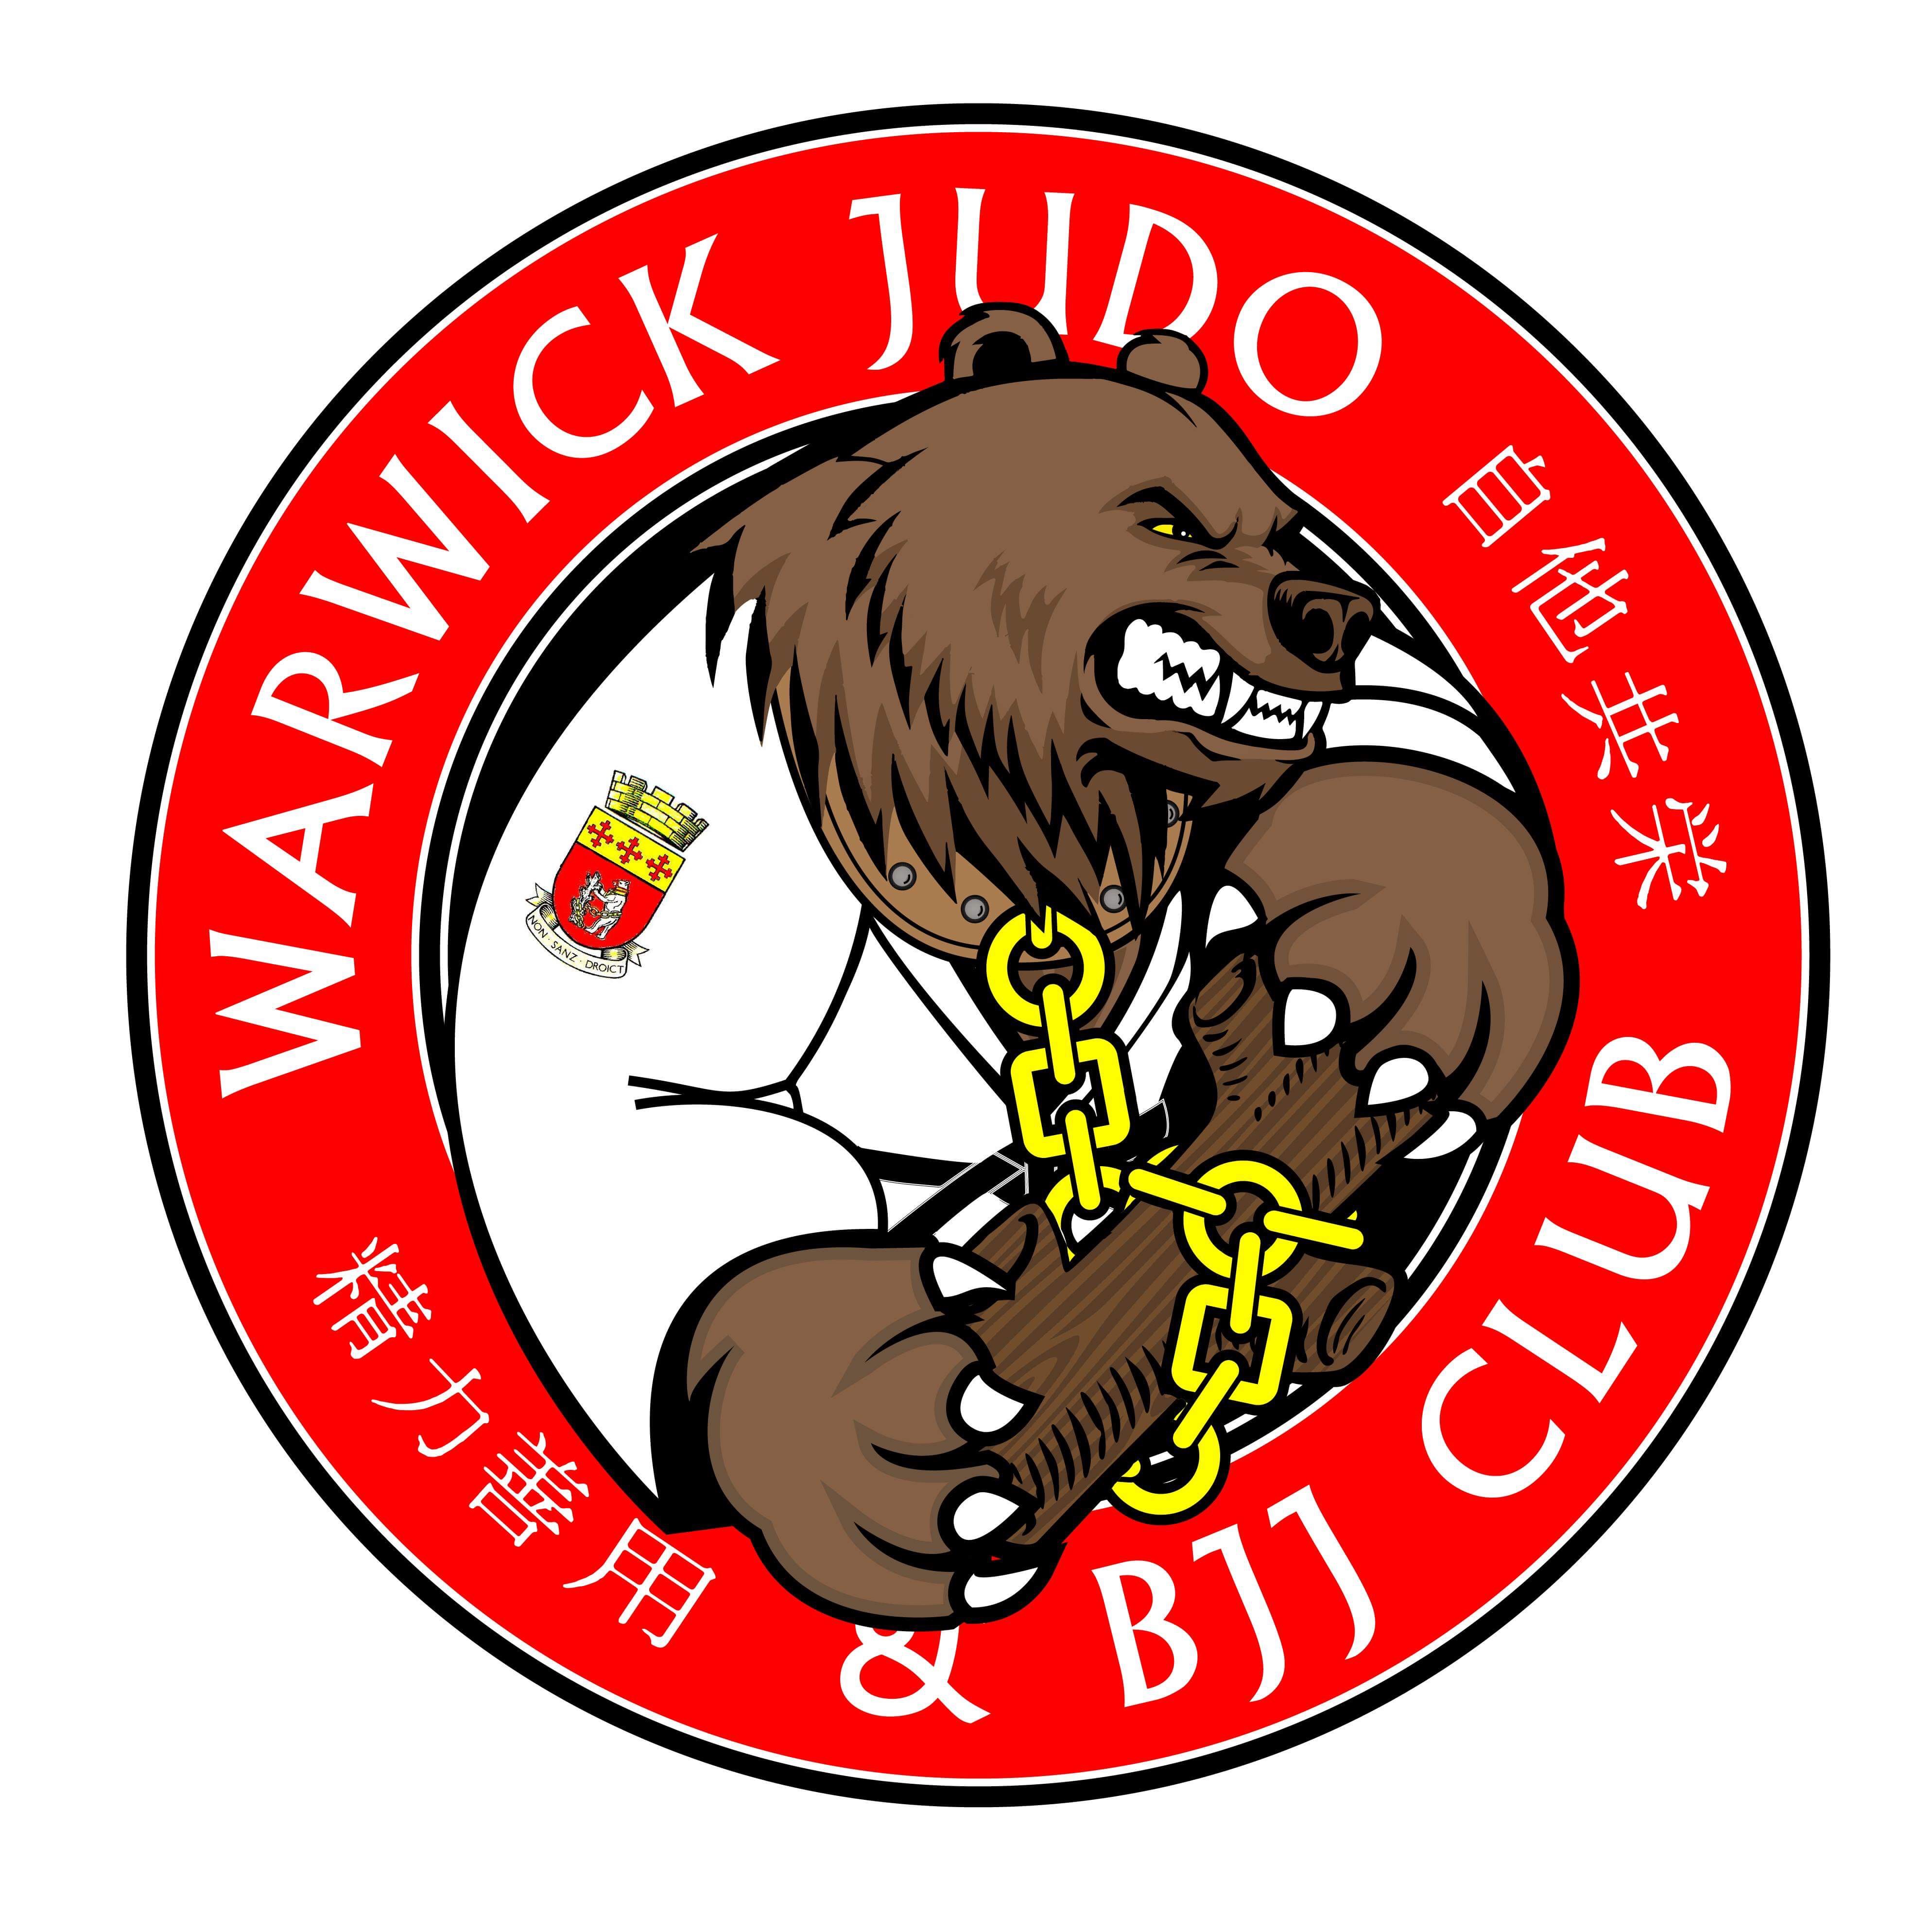 Warwick Judo & BJJ